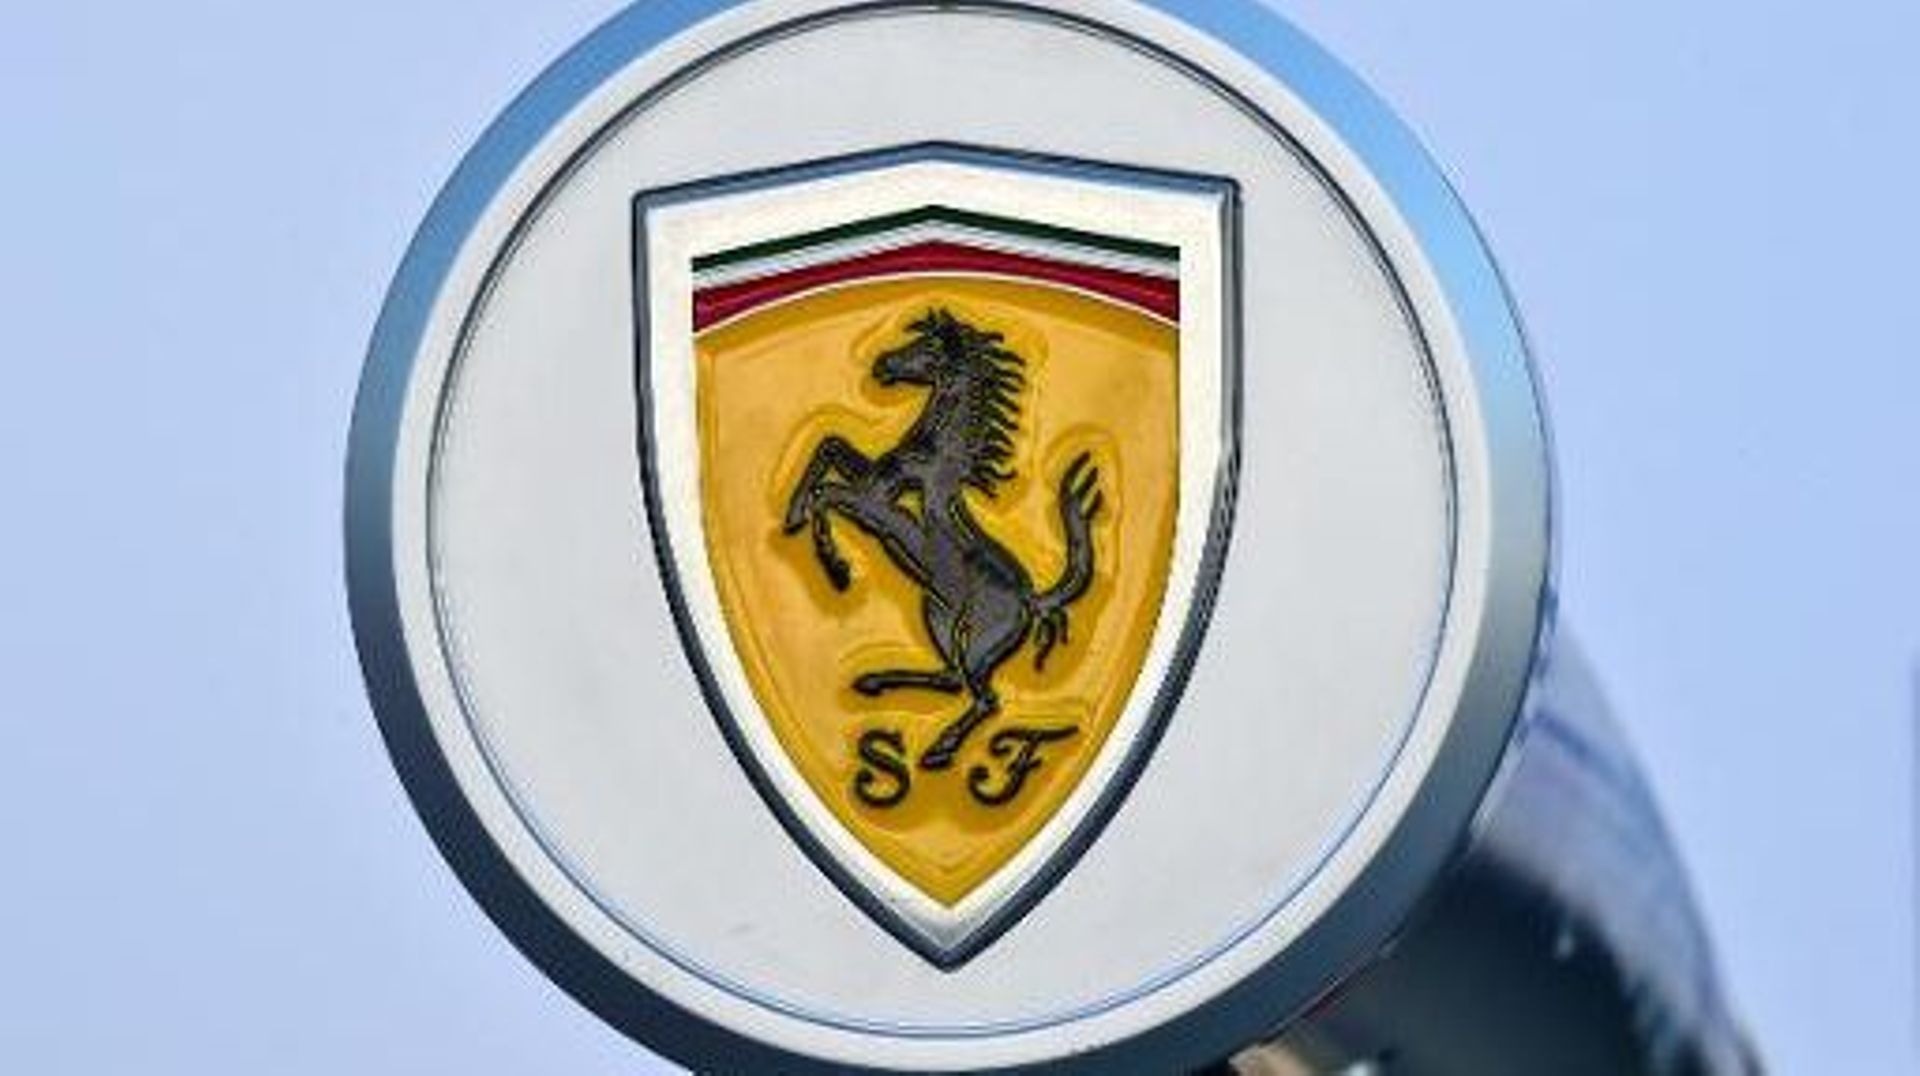 Ferrari a enregistré une croissance de 14,5% au premier semestre 2014, "un chiffre absolument sans précédent dans l'histoire" de la société.